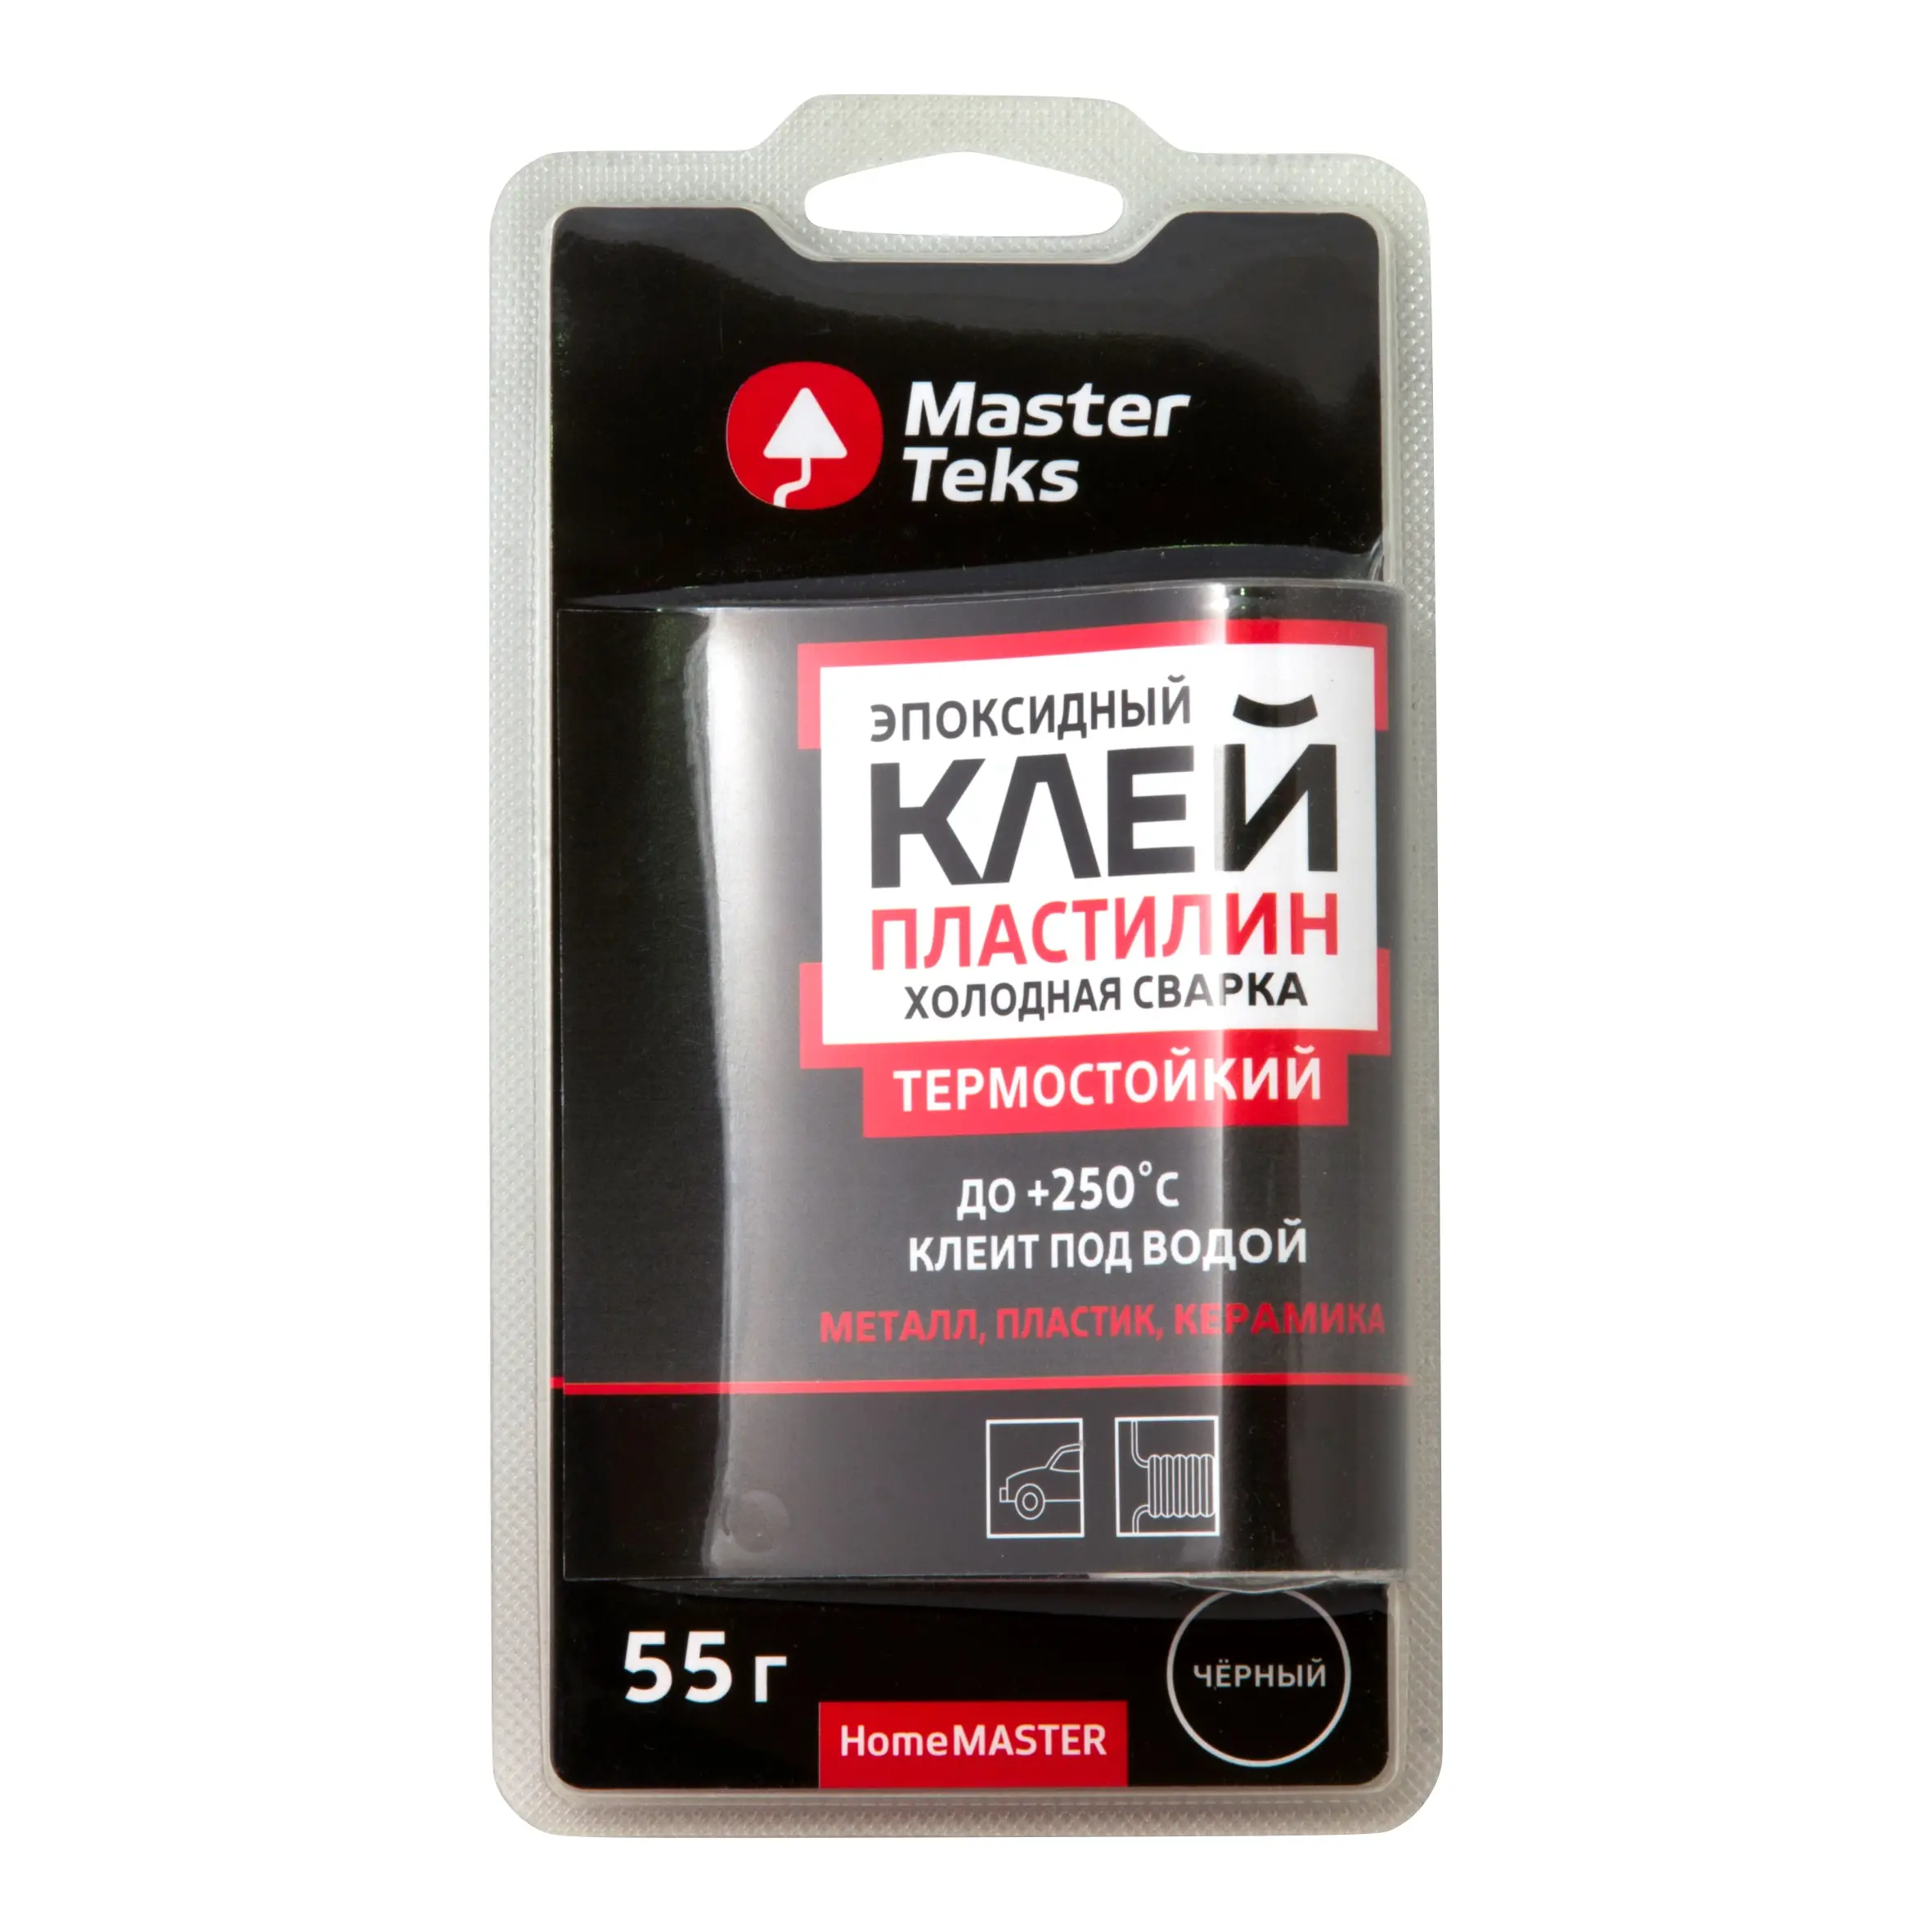 MasterTeks HM Клей-пластилин эпоксидный холодная сварка ТЕРМОСТОЙКИЙ 0,55 черный